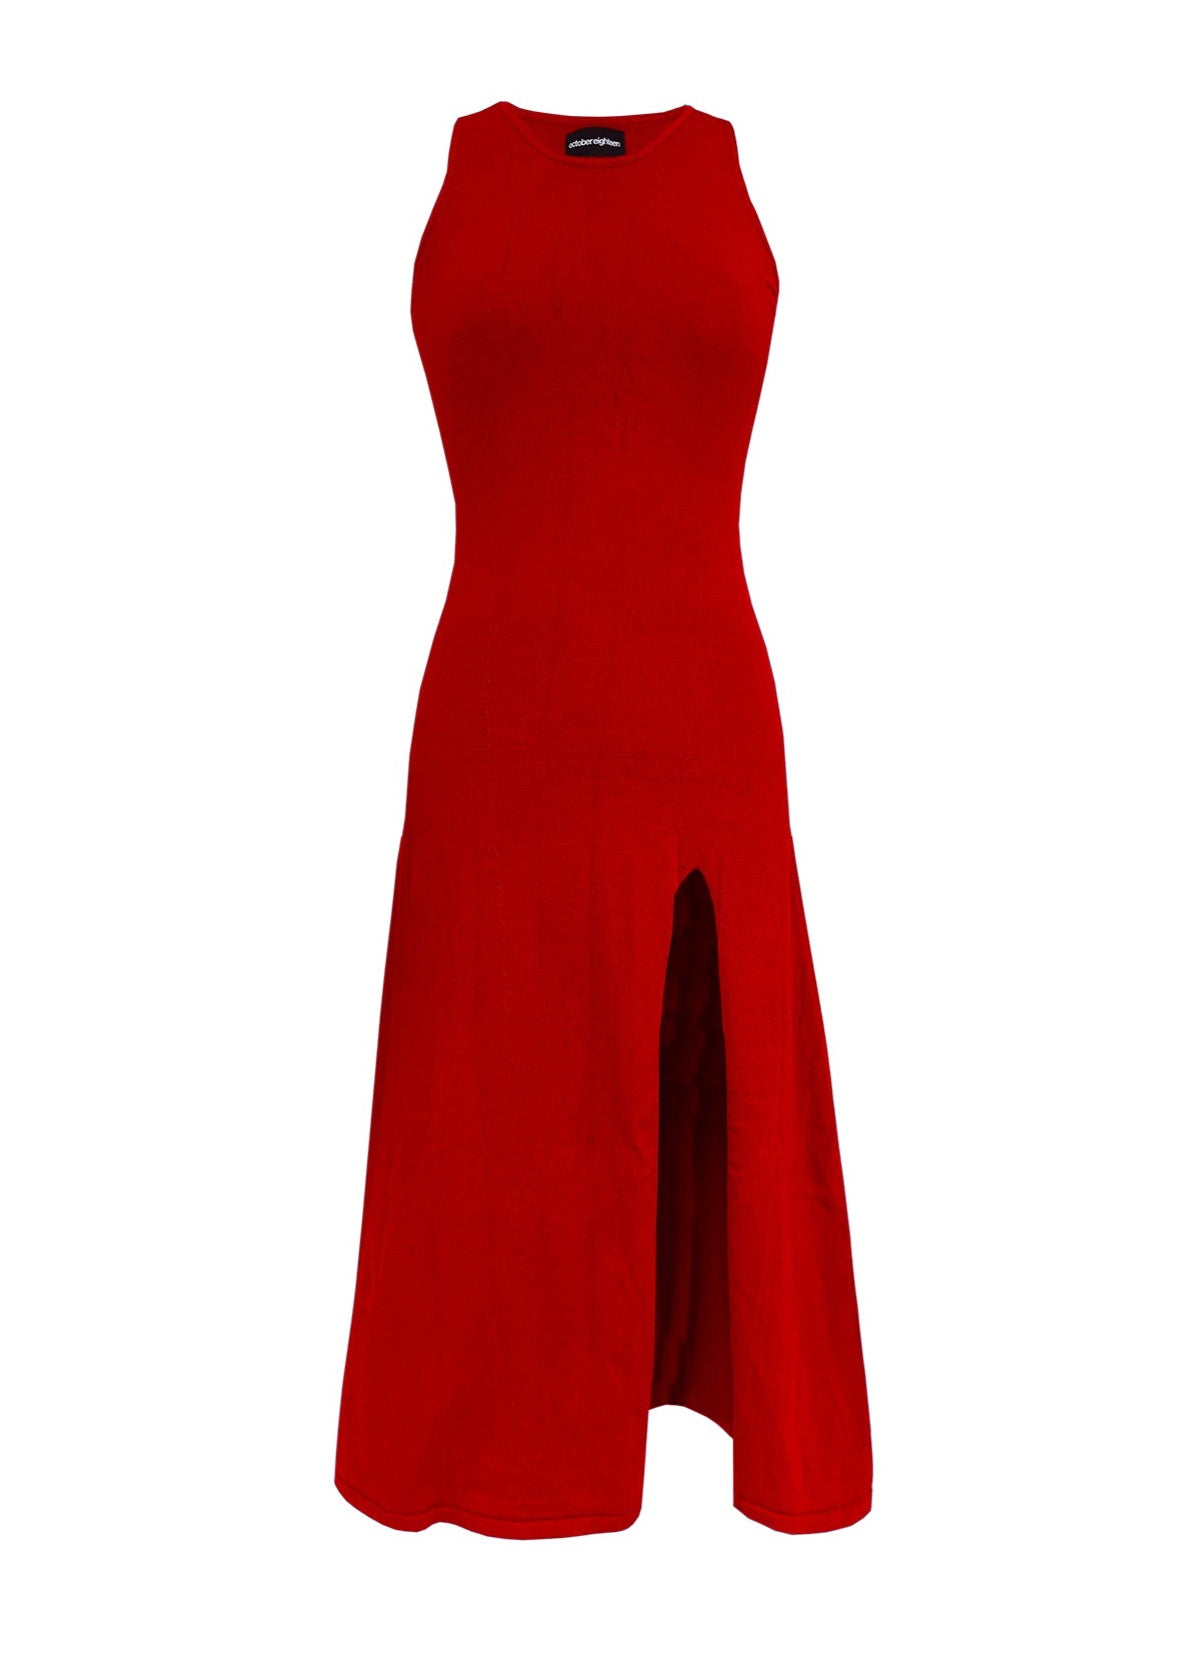 KELLY DRESS in Scarlet Red